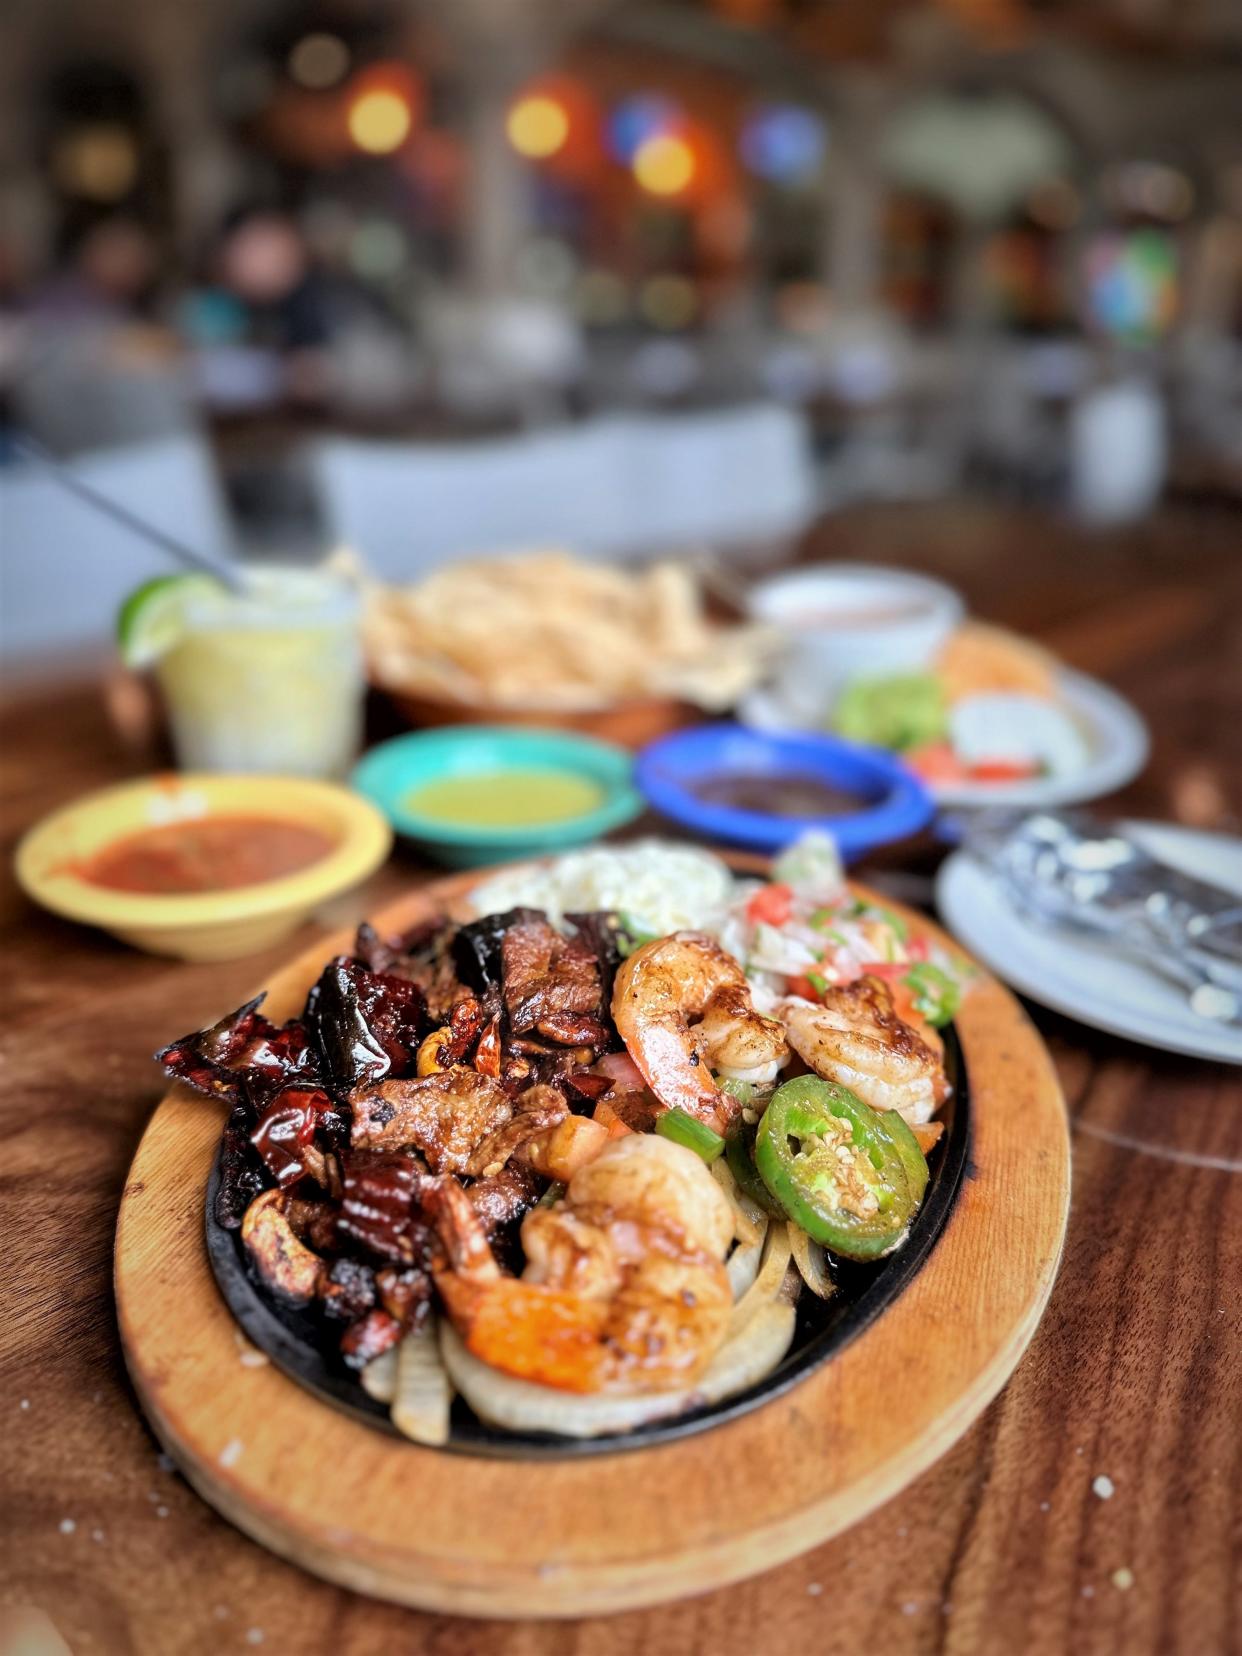 Polvos regulars will recognize dishes like the guajillo fajitas.